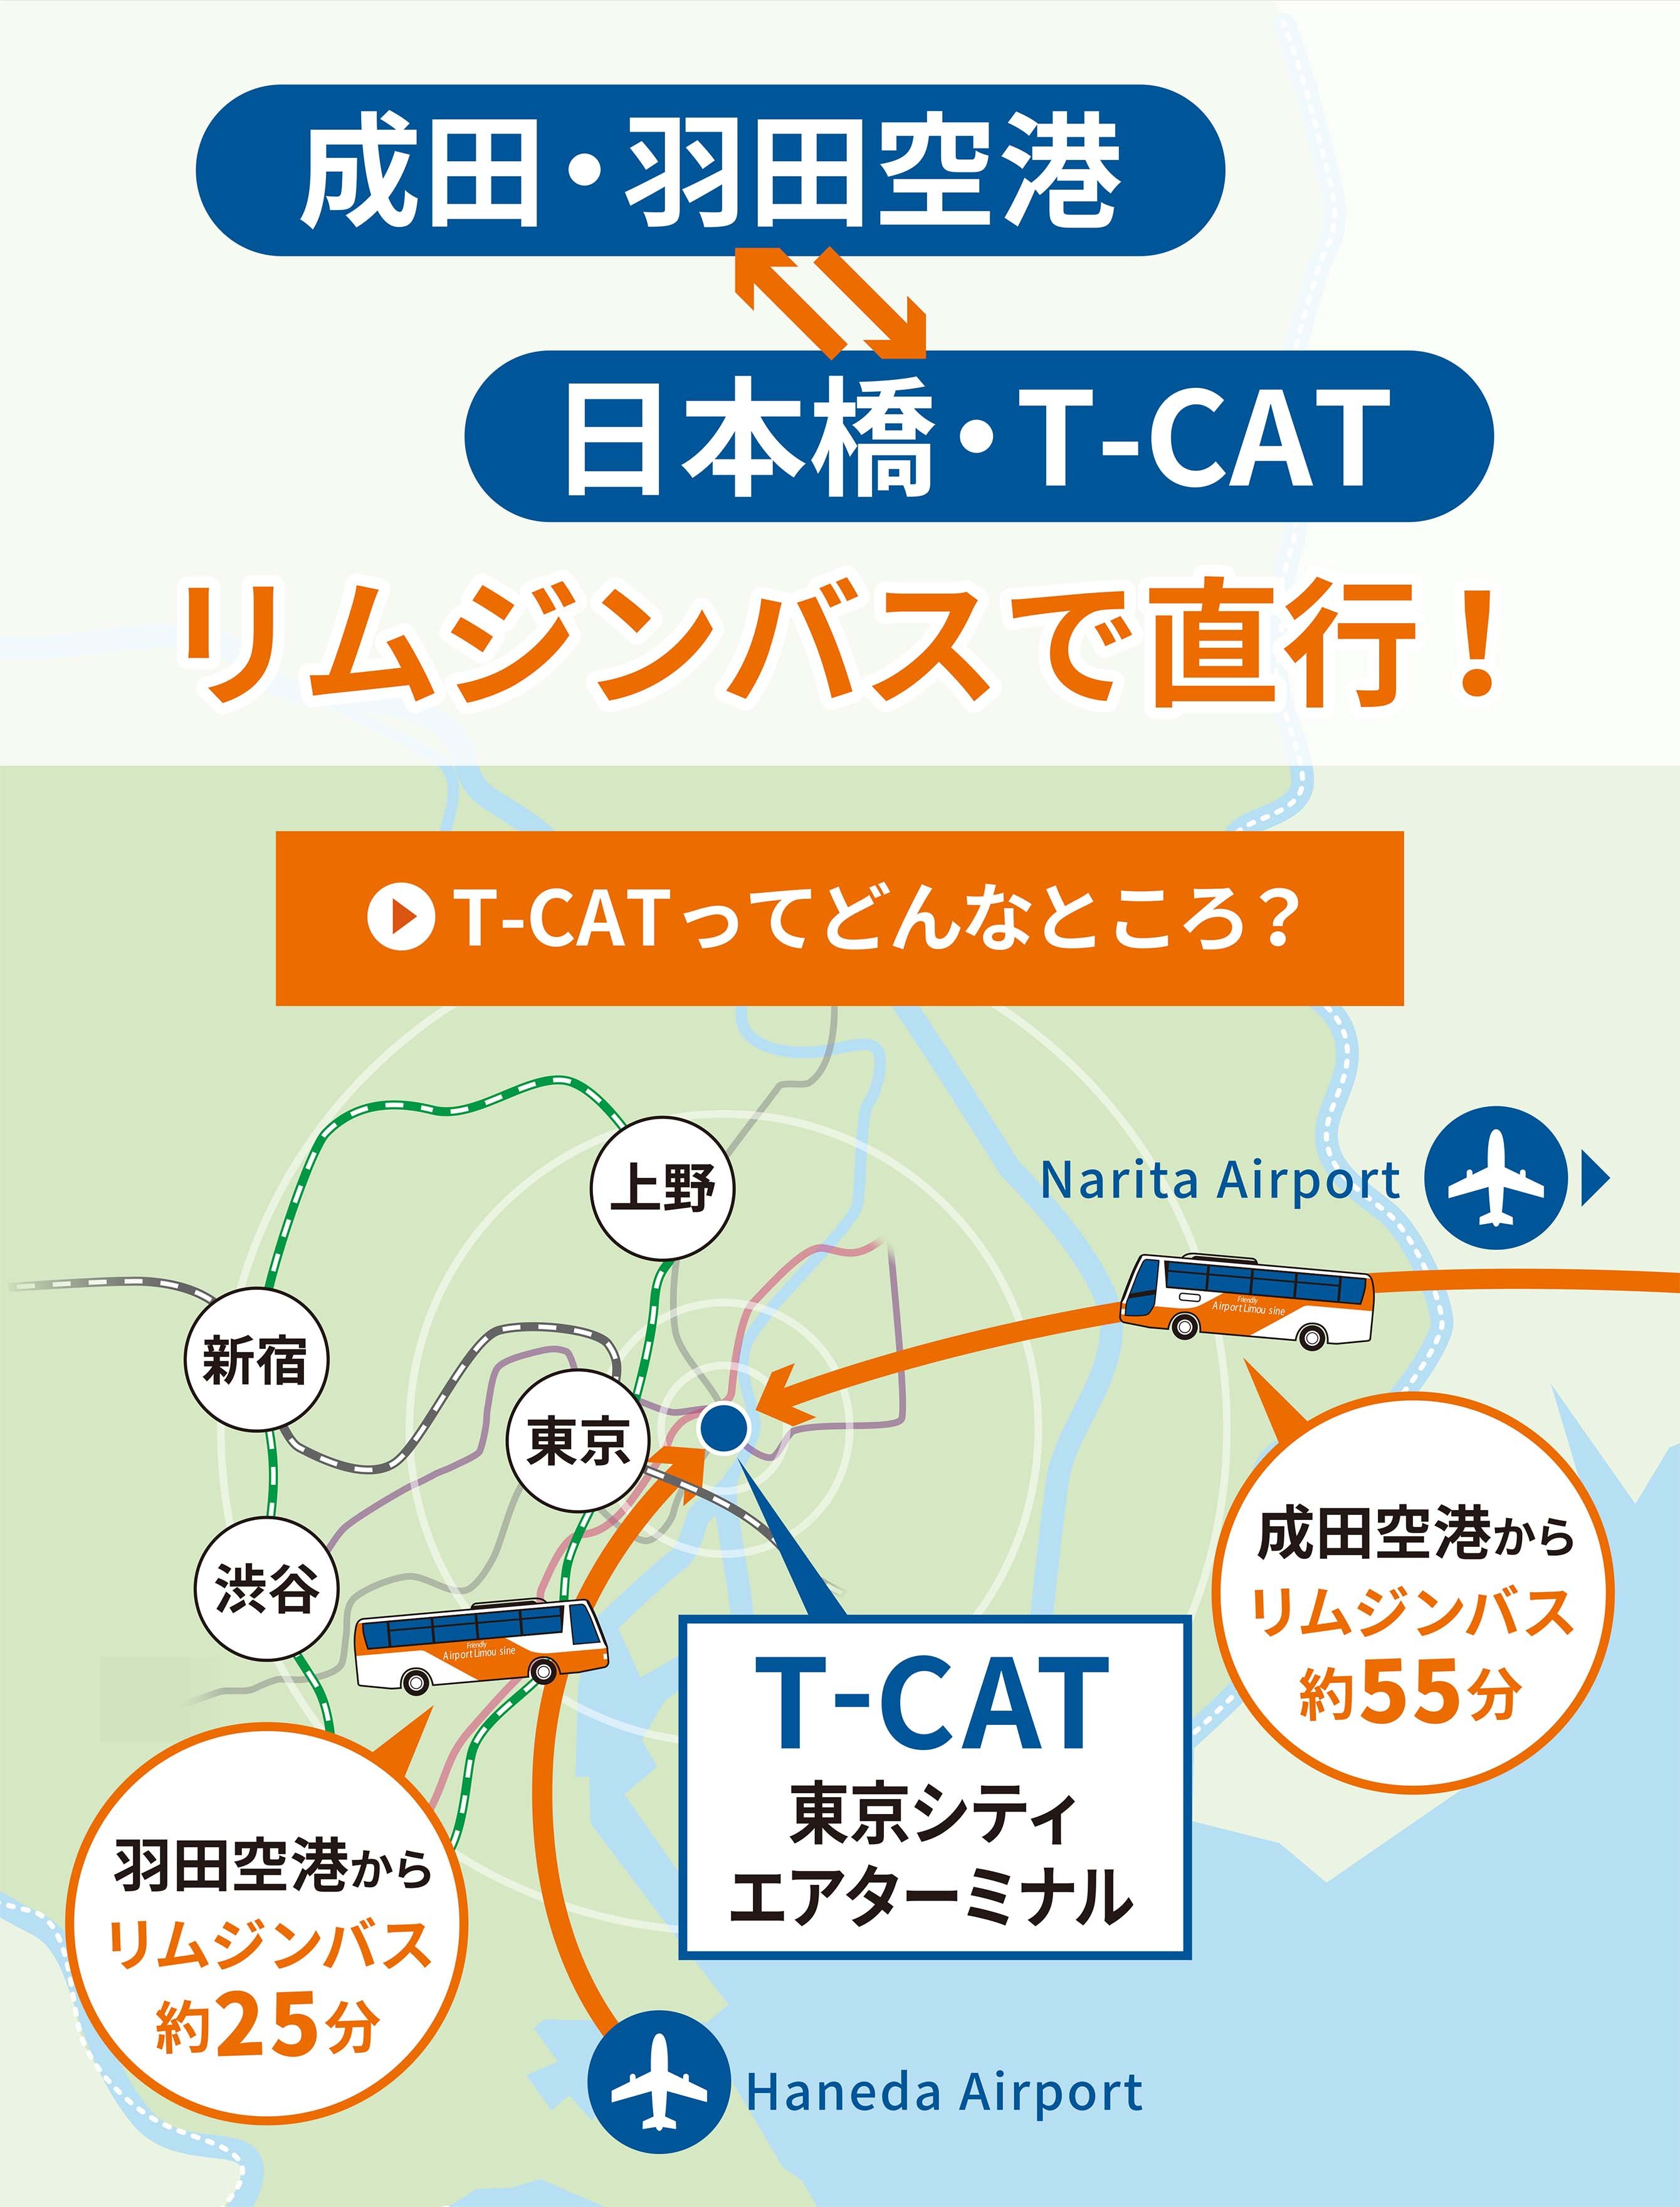 ホーム 東京シティエアターミナル T Cat